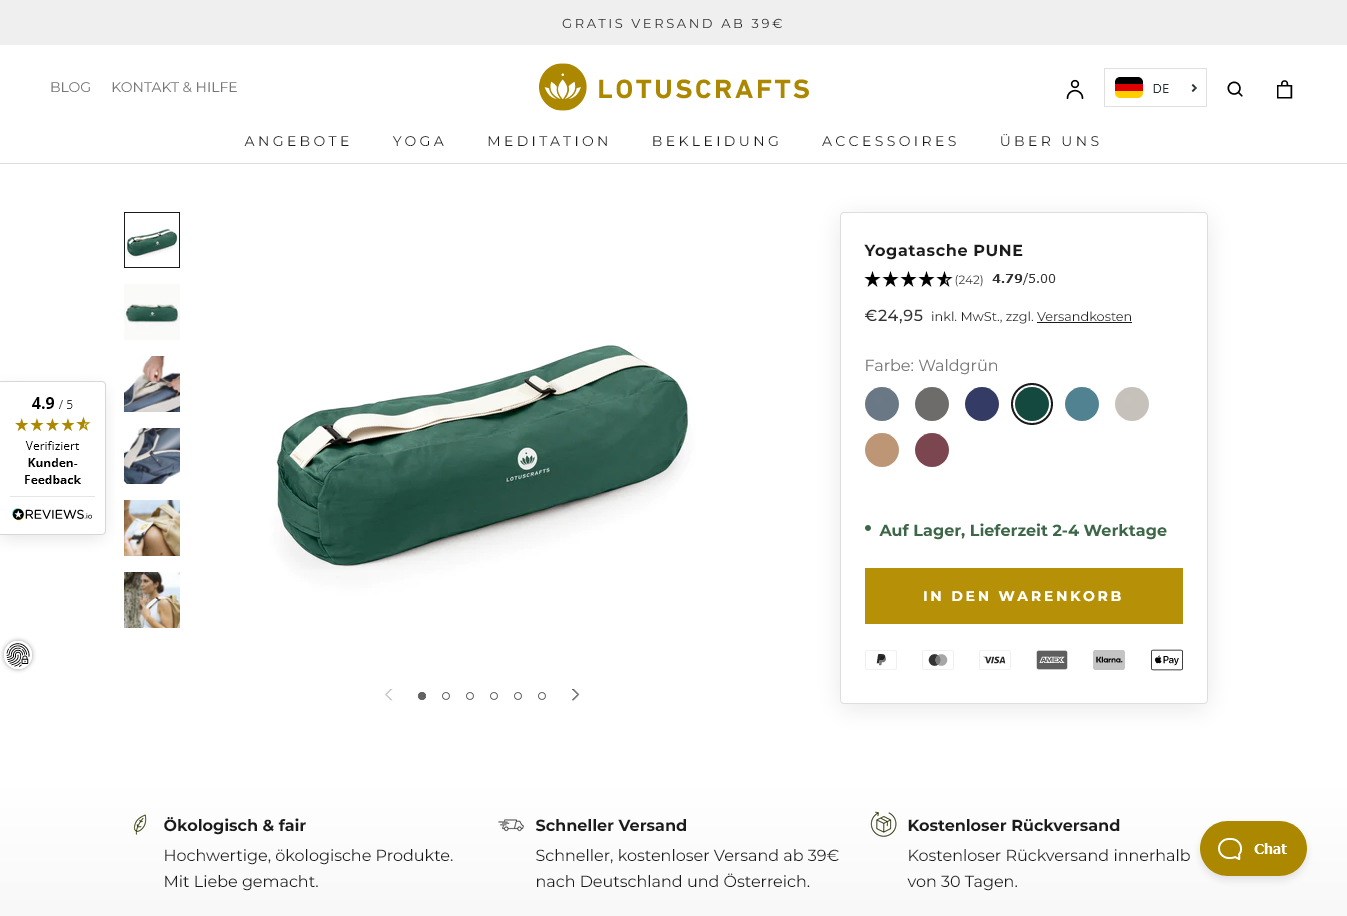 Onlineshop - Warenkorb - Screenshot des Warenkorbs des Unternehmens Lotuscrafts. Um Vertrauen aufzubauen, lohnt sich die Einbindung von Siegeln wie beispielsweise trusted shops.